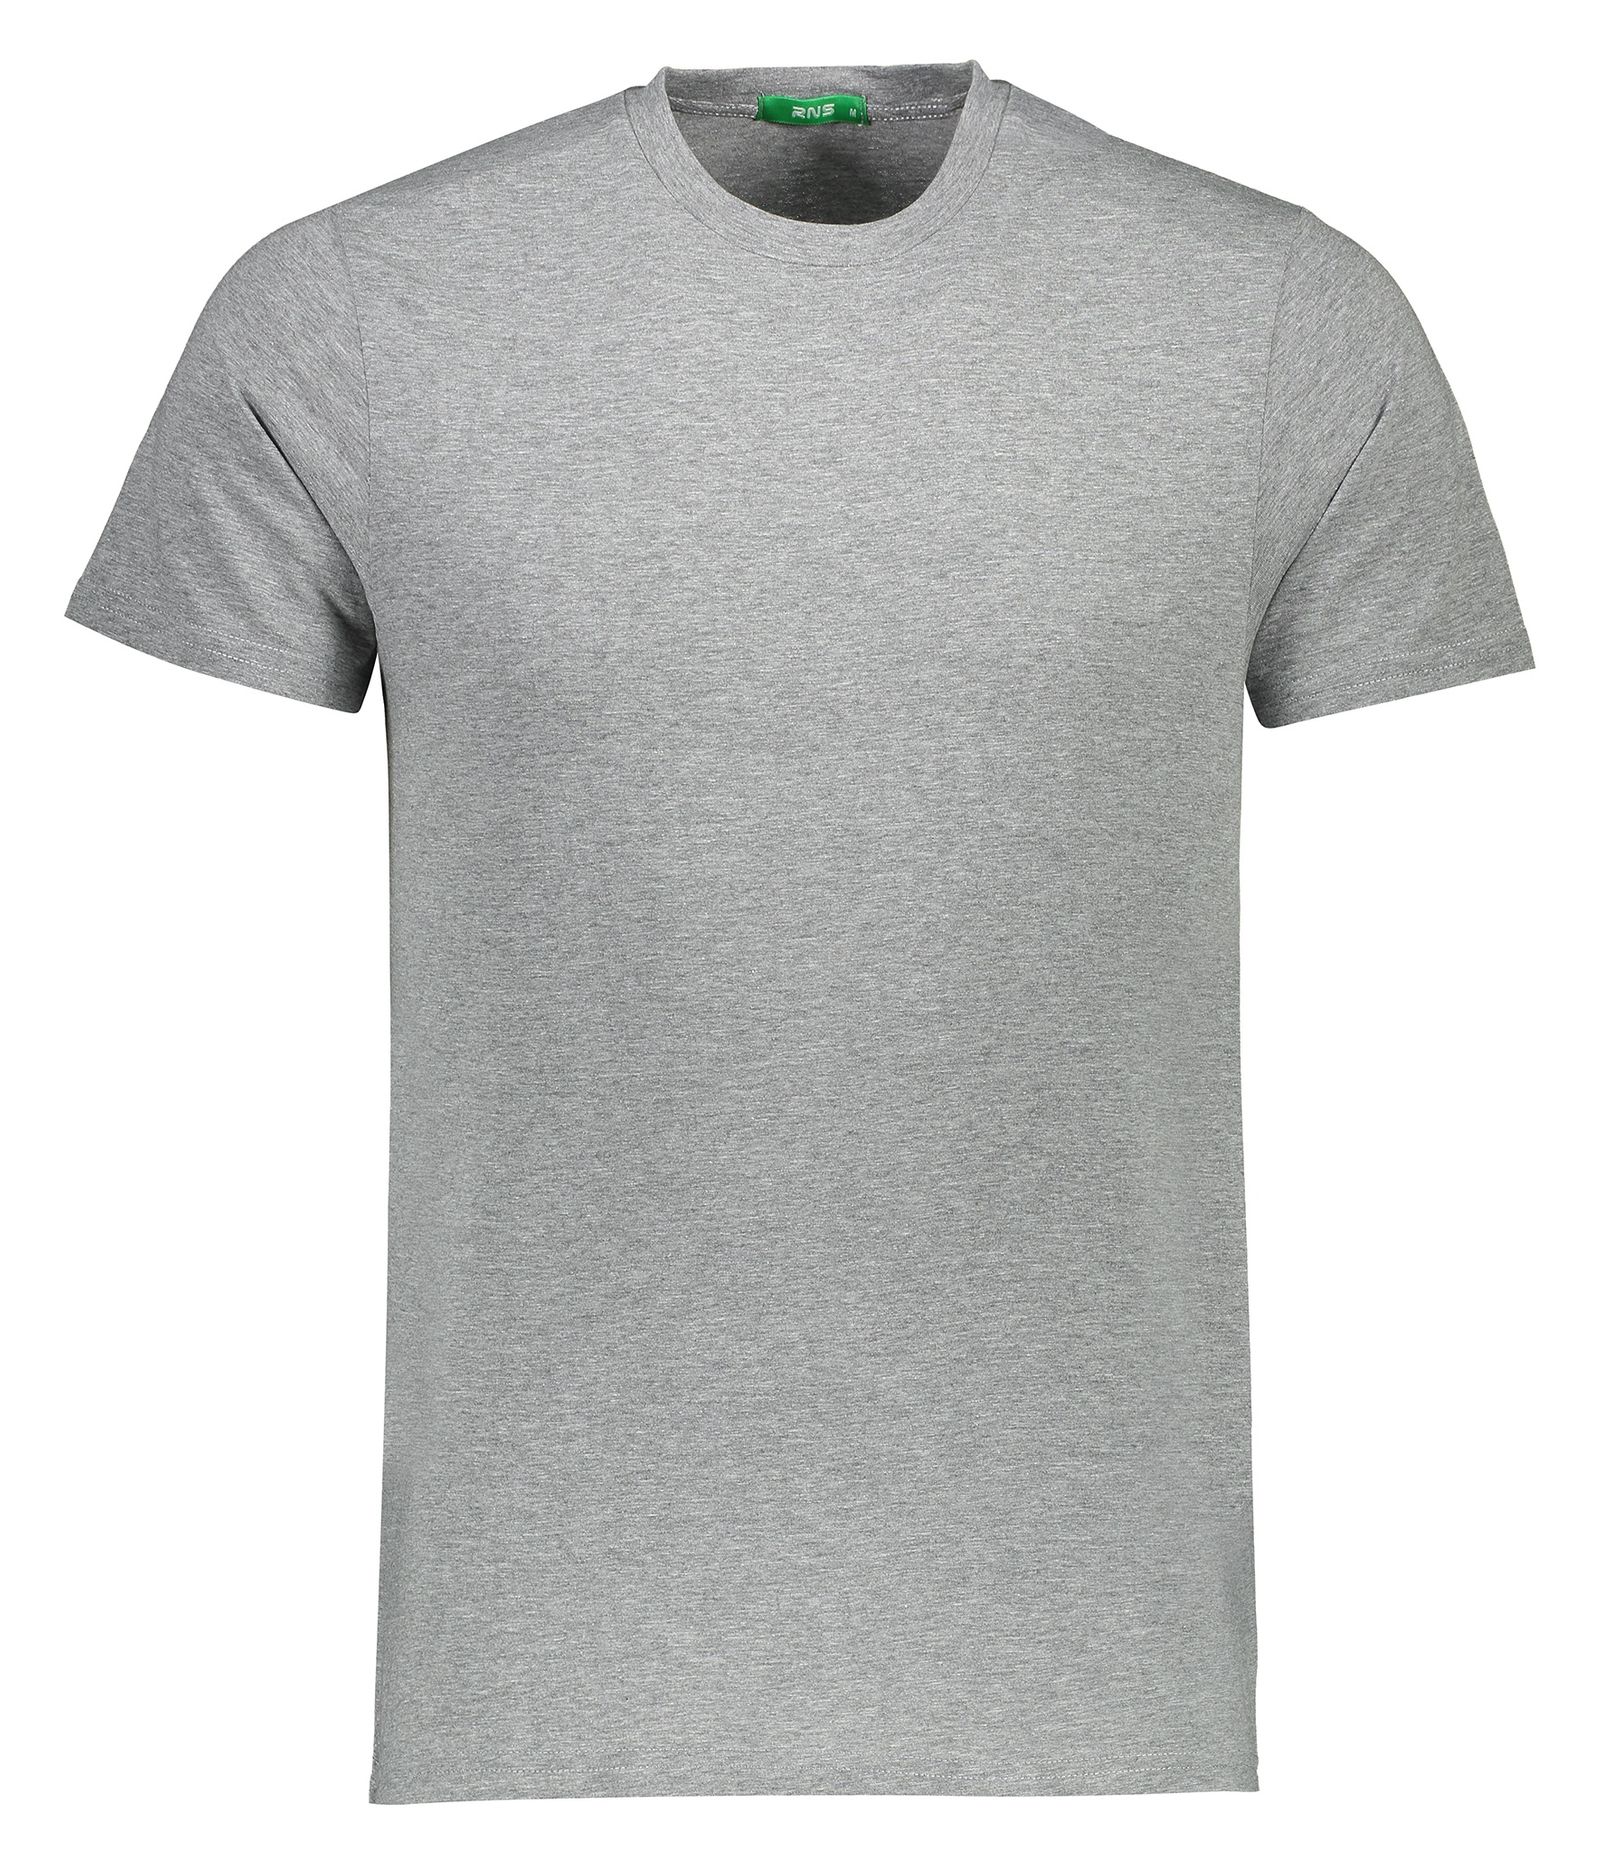 تی شرت مردانه آر ان اس مدل 1131005-90 -  - 1